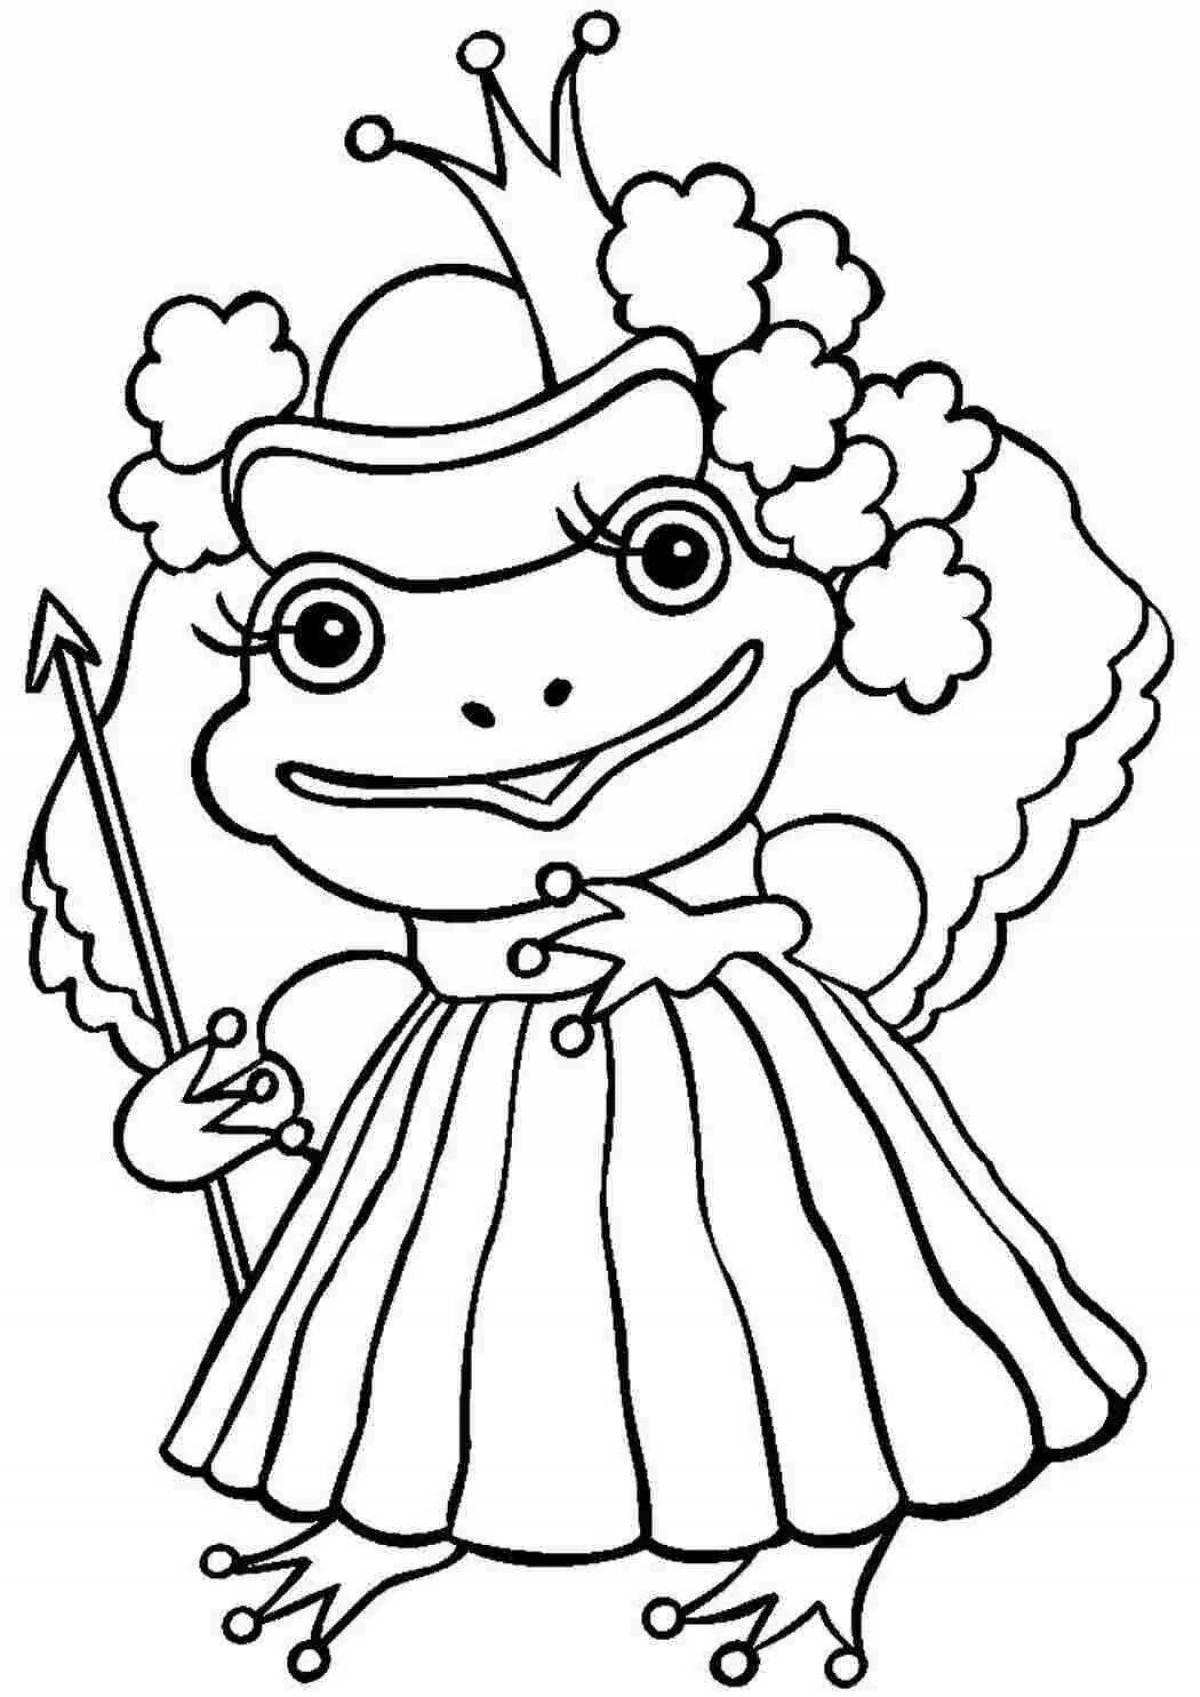 Креативная раскраска принцессы-лягушки для детей